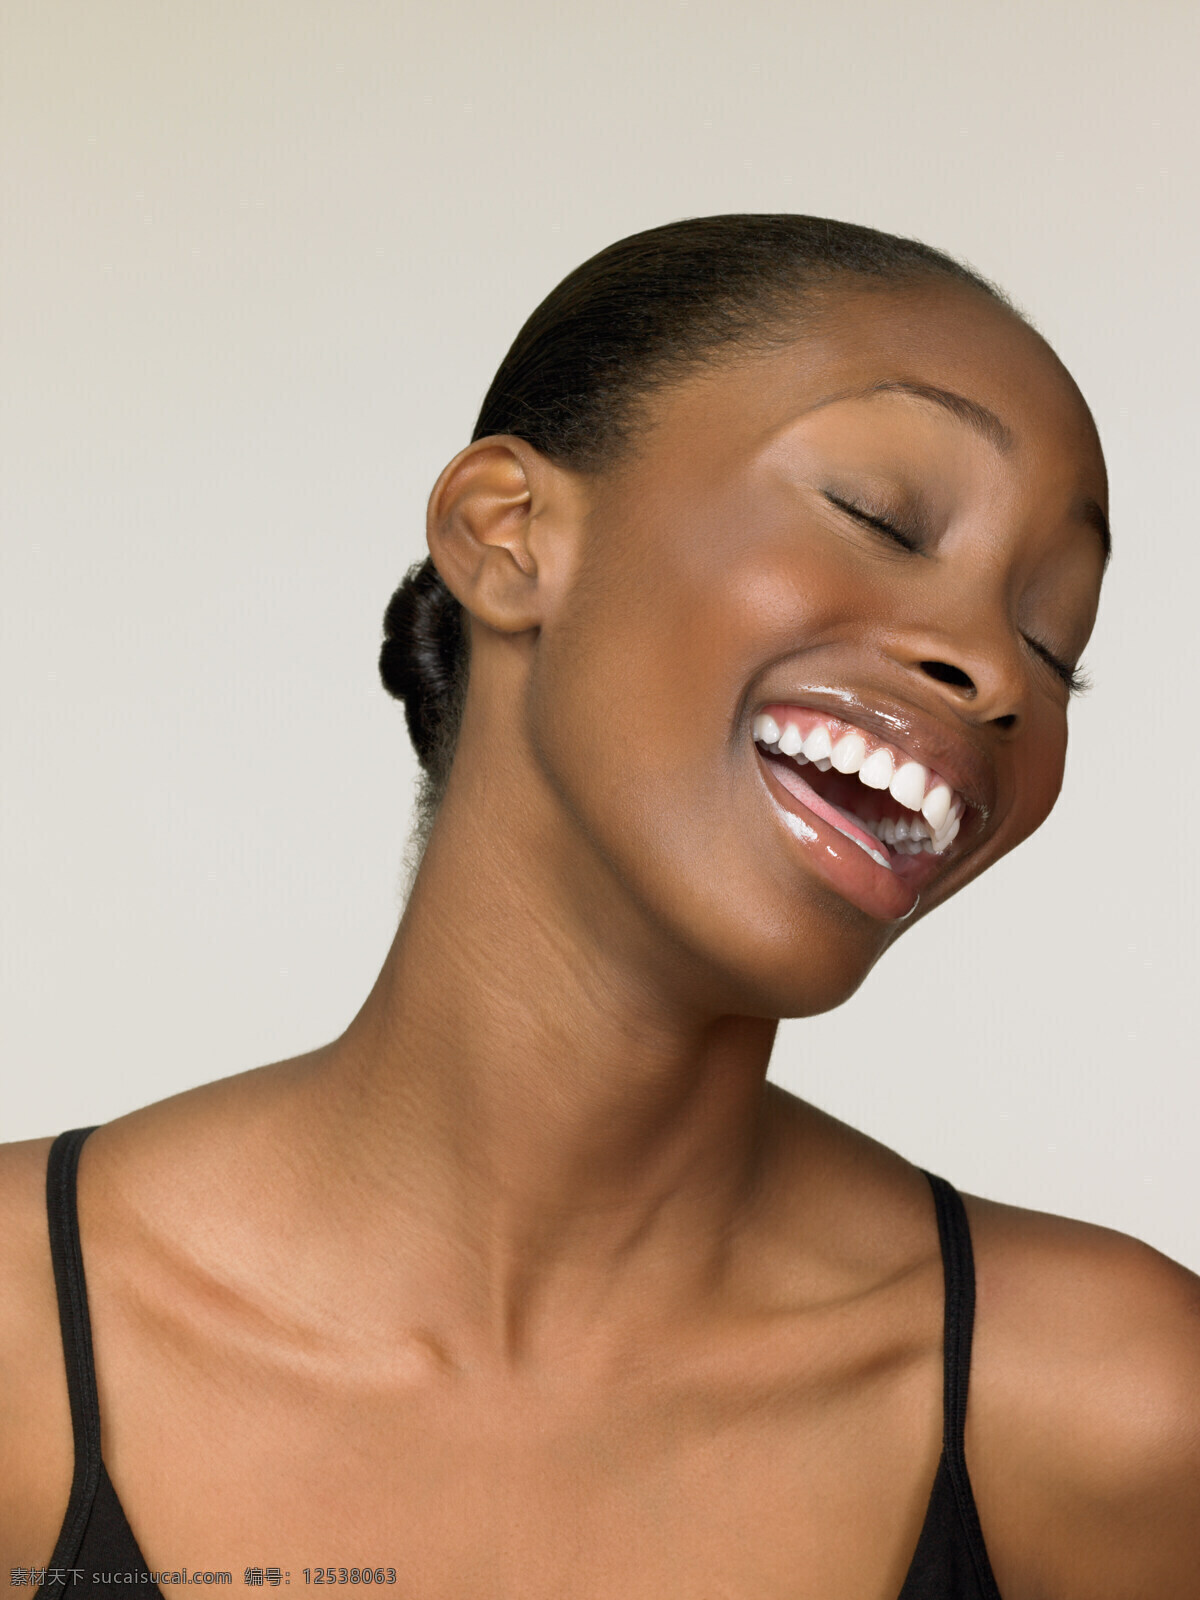 开心 大笑 黑人 女性 时尚青年 女人 性感美女 模特 黑人女性 开心笑容 美女图片 人物图片